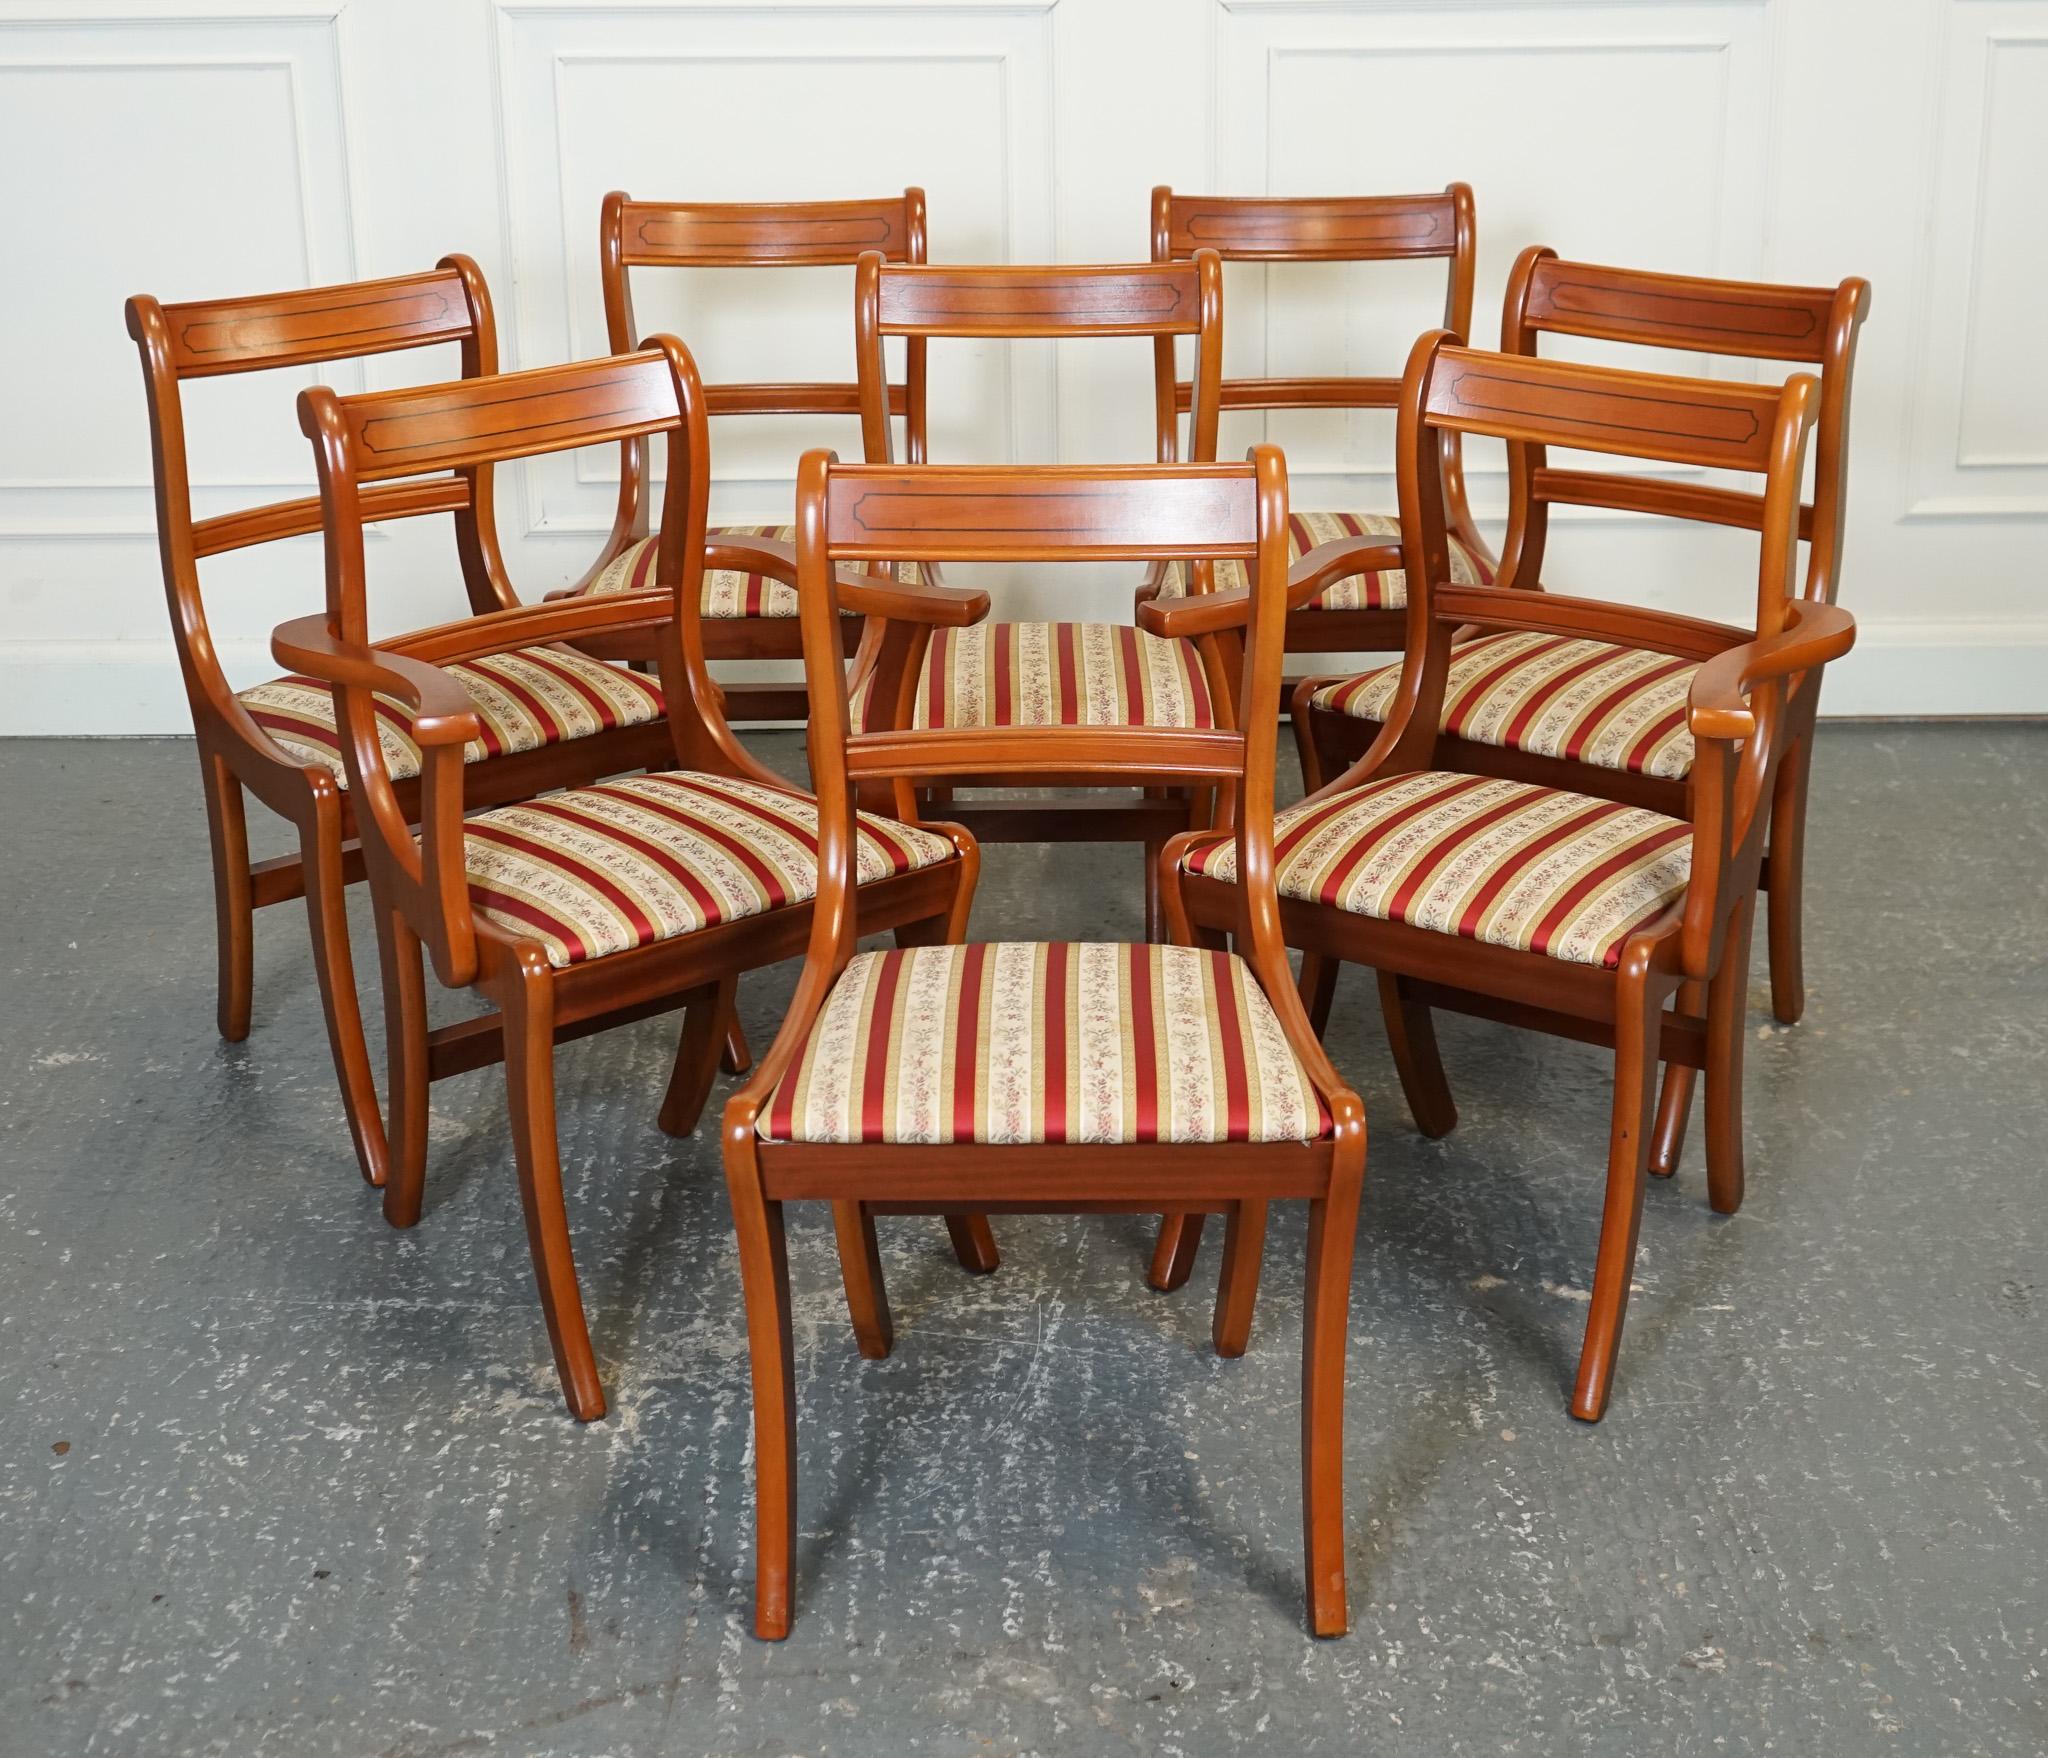 Antiquités de Londres



Nous sommes ravis d'offrir à la vente ce magnifique ensemble de 8 chaises de salle à manger en bois d'if.

L'ensemble de 8 chaises de salle à manger présente une combinaison étonnante de cadres en bois d'if avec un